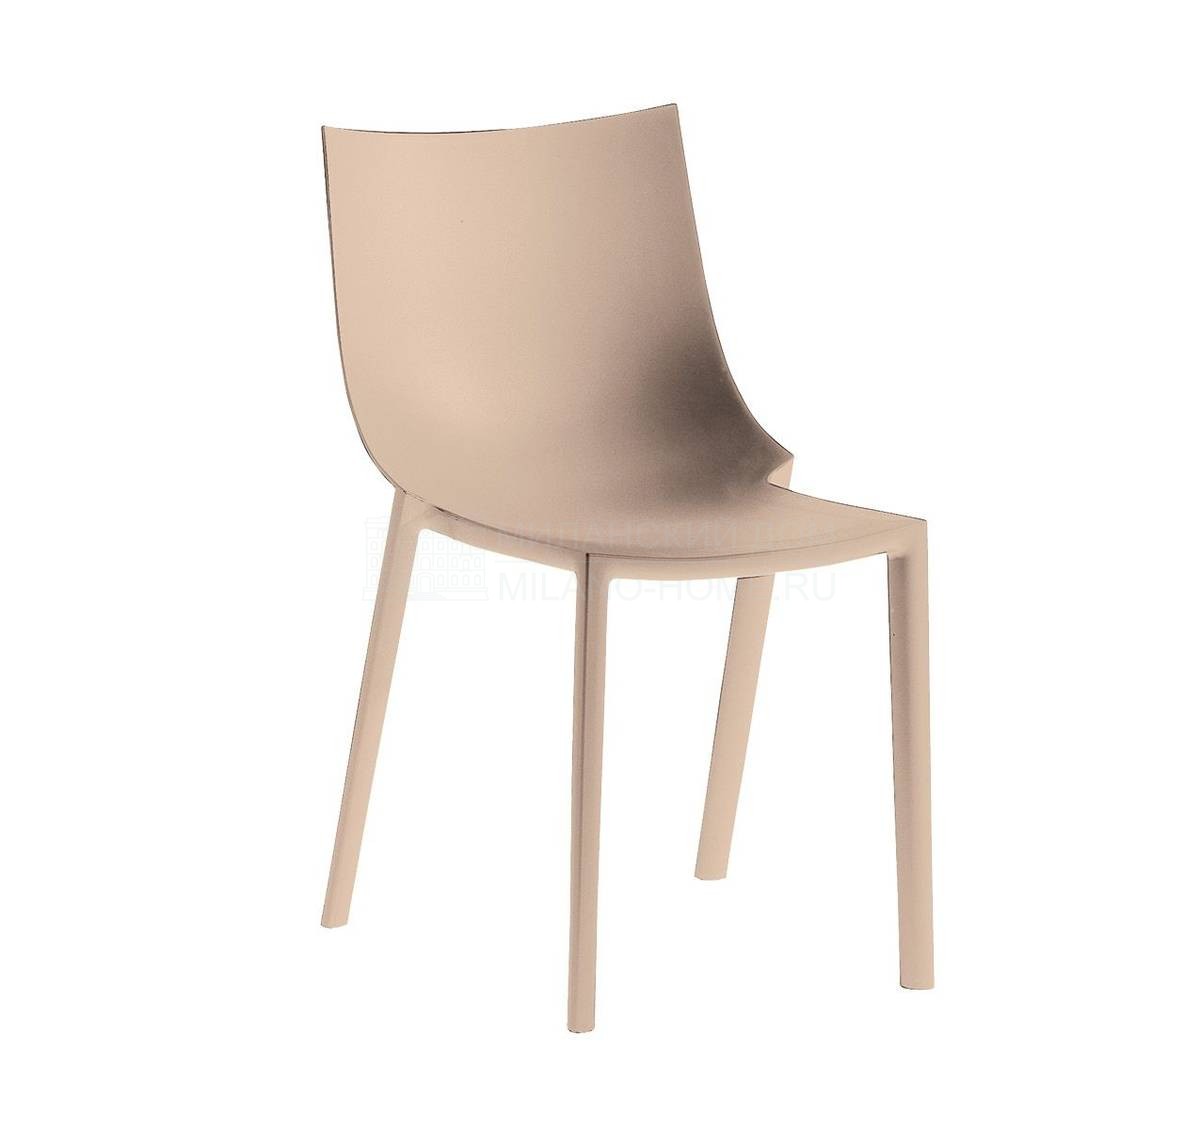 Металлический / Пластиковый стул Bo из Италии фабрики DRIADE